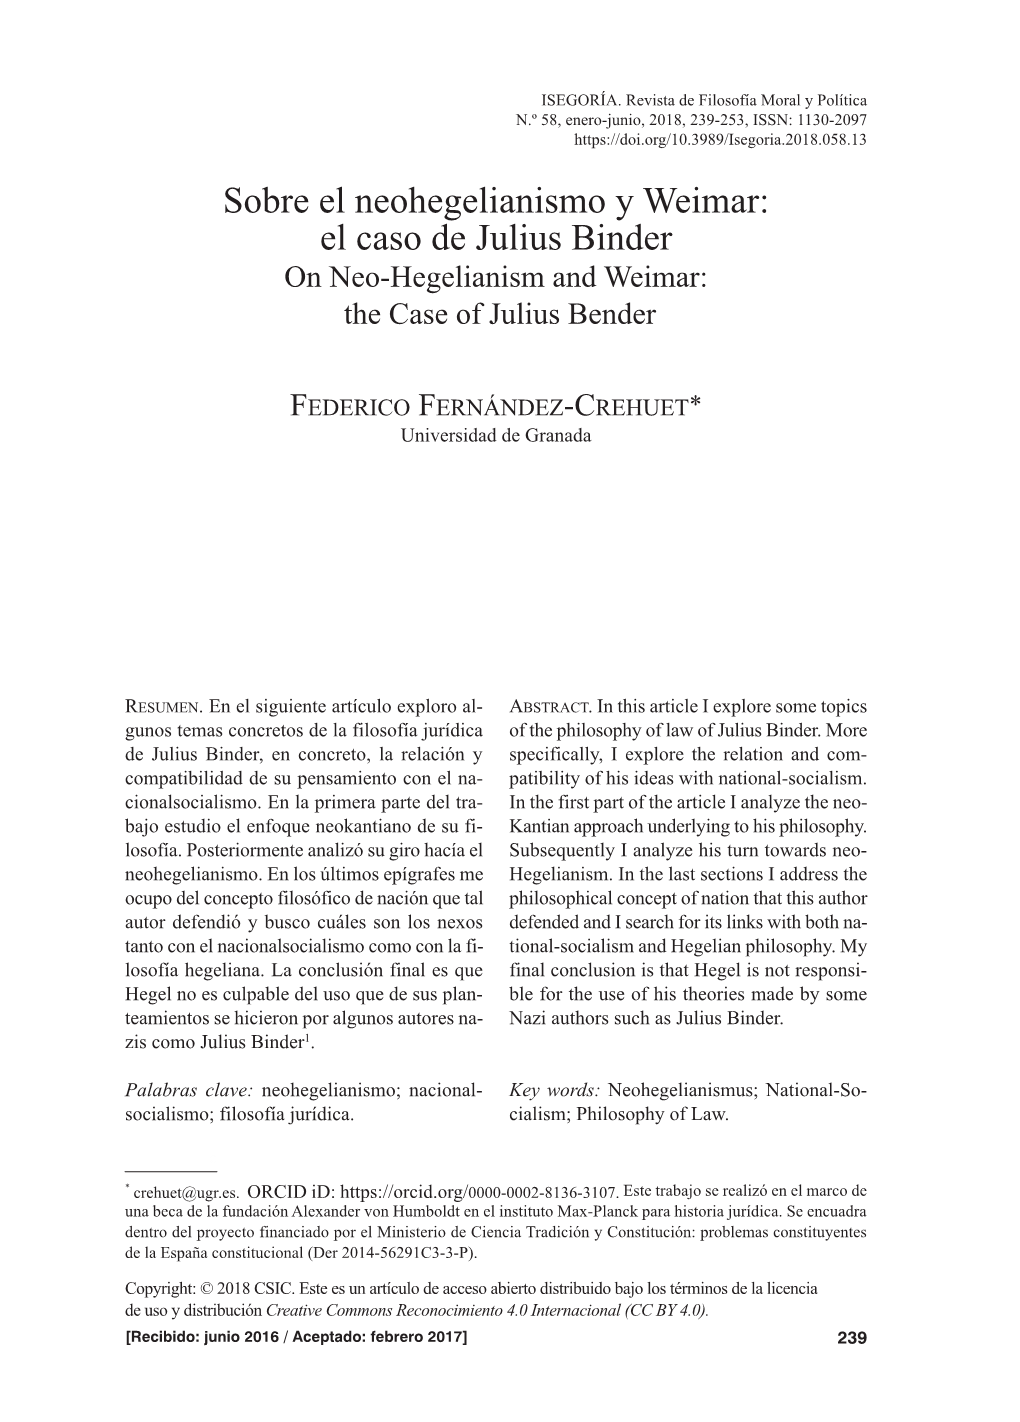 El Caso De Julius Binder on Neo-Hegelianism and Weimar: the Case of Julius Bender